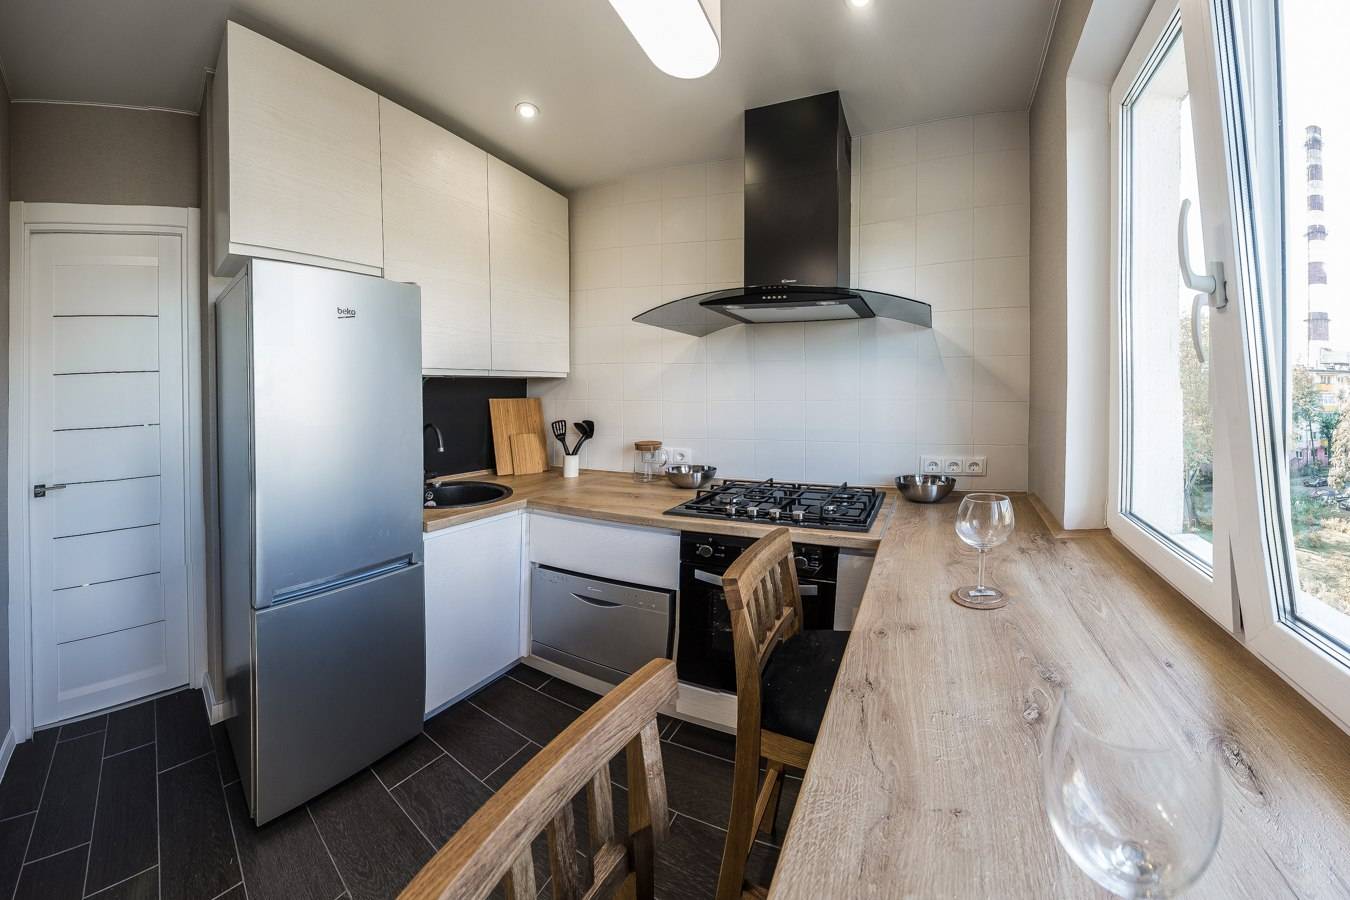 Белая кухня с черной столешницей: дизайн кухонного интерьера в интерьере